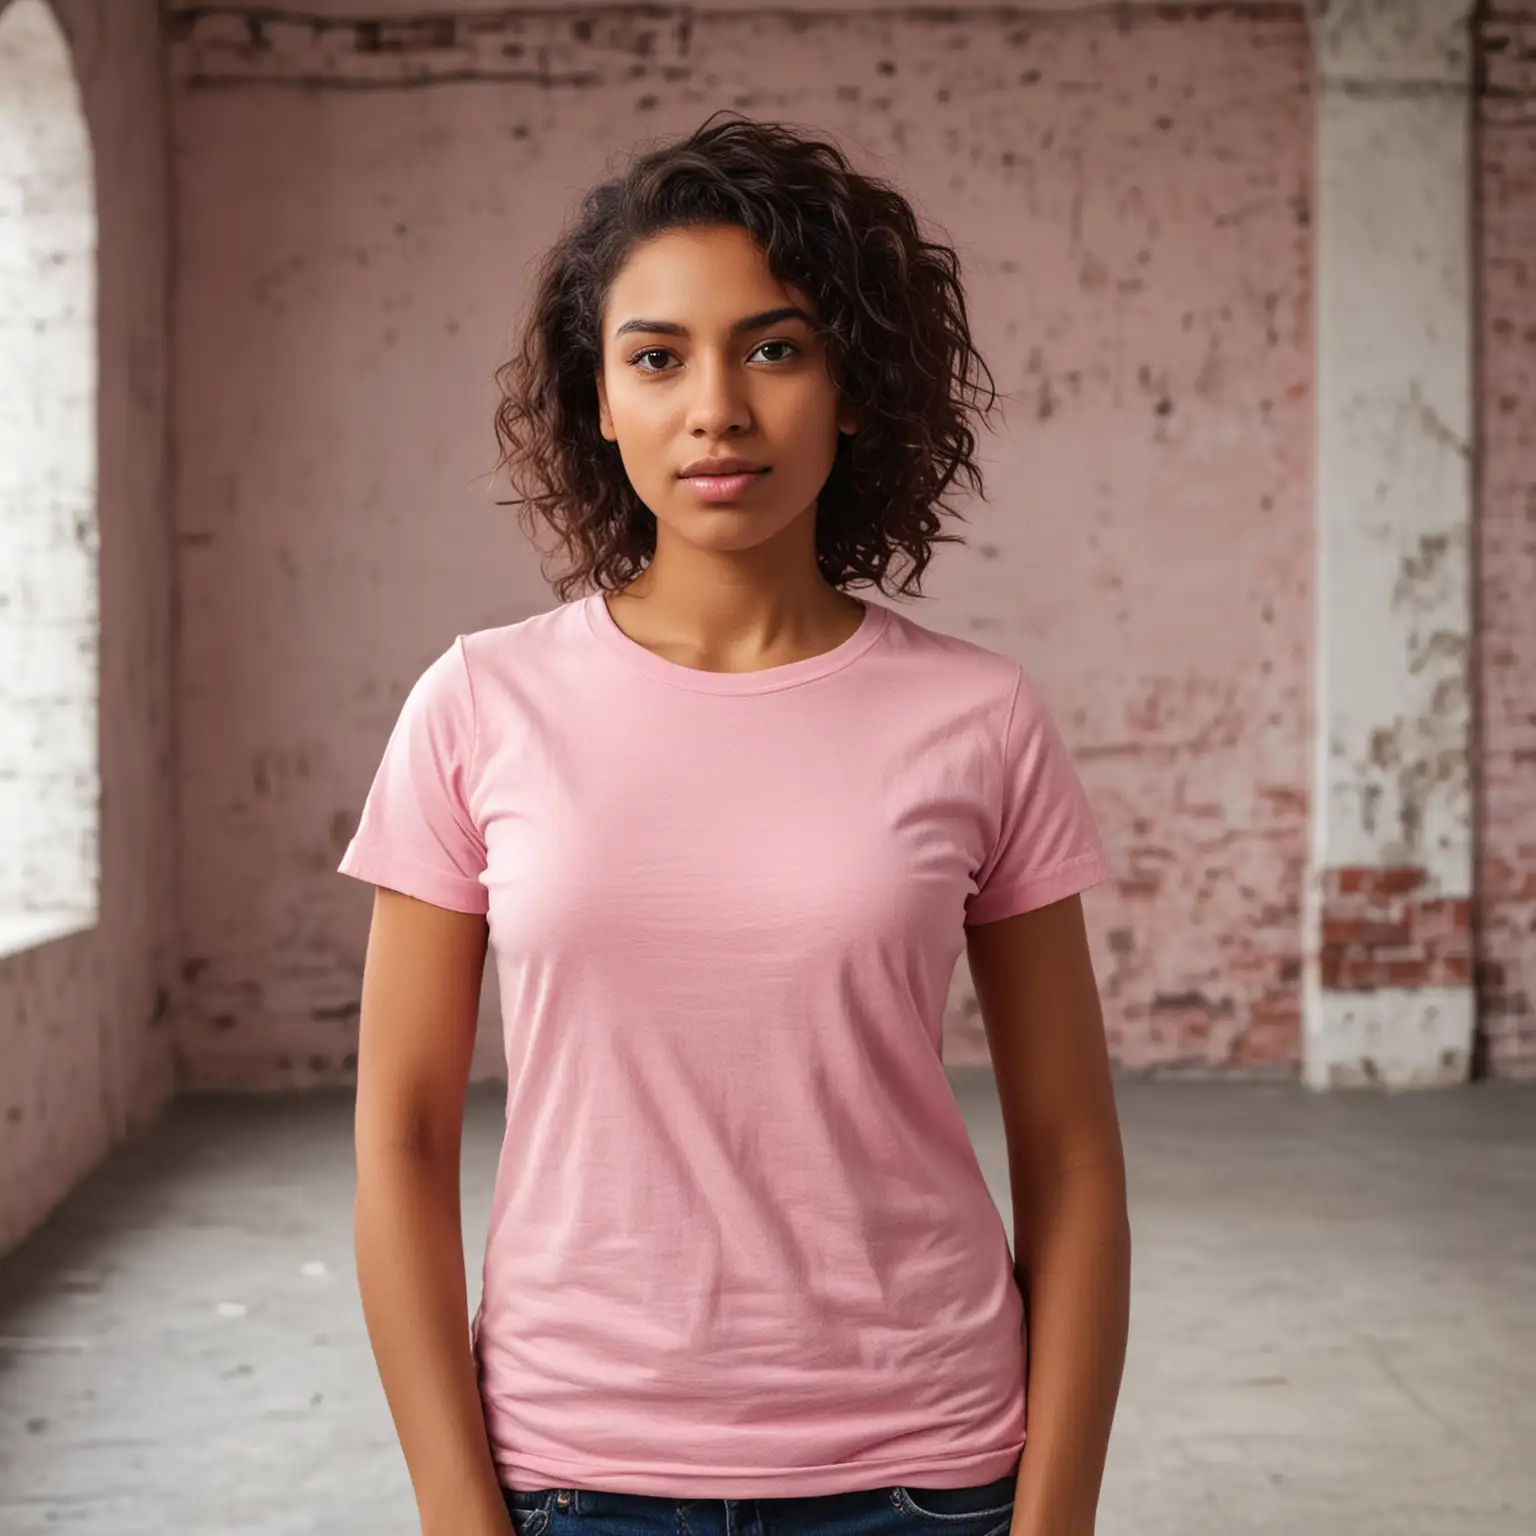 Urban Fashion Stylish Woman in Pink TShirt